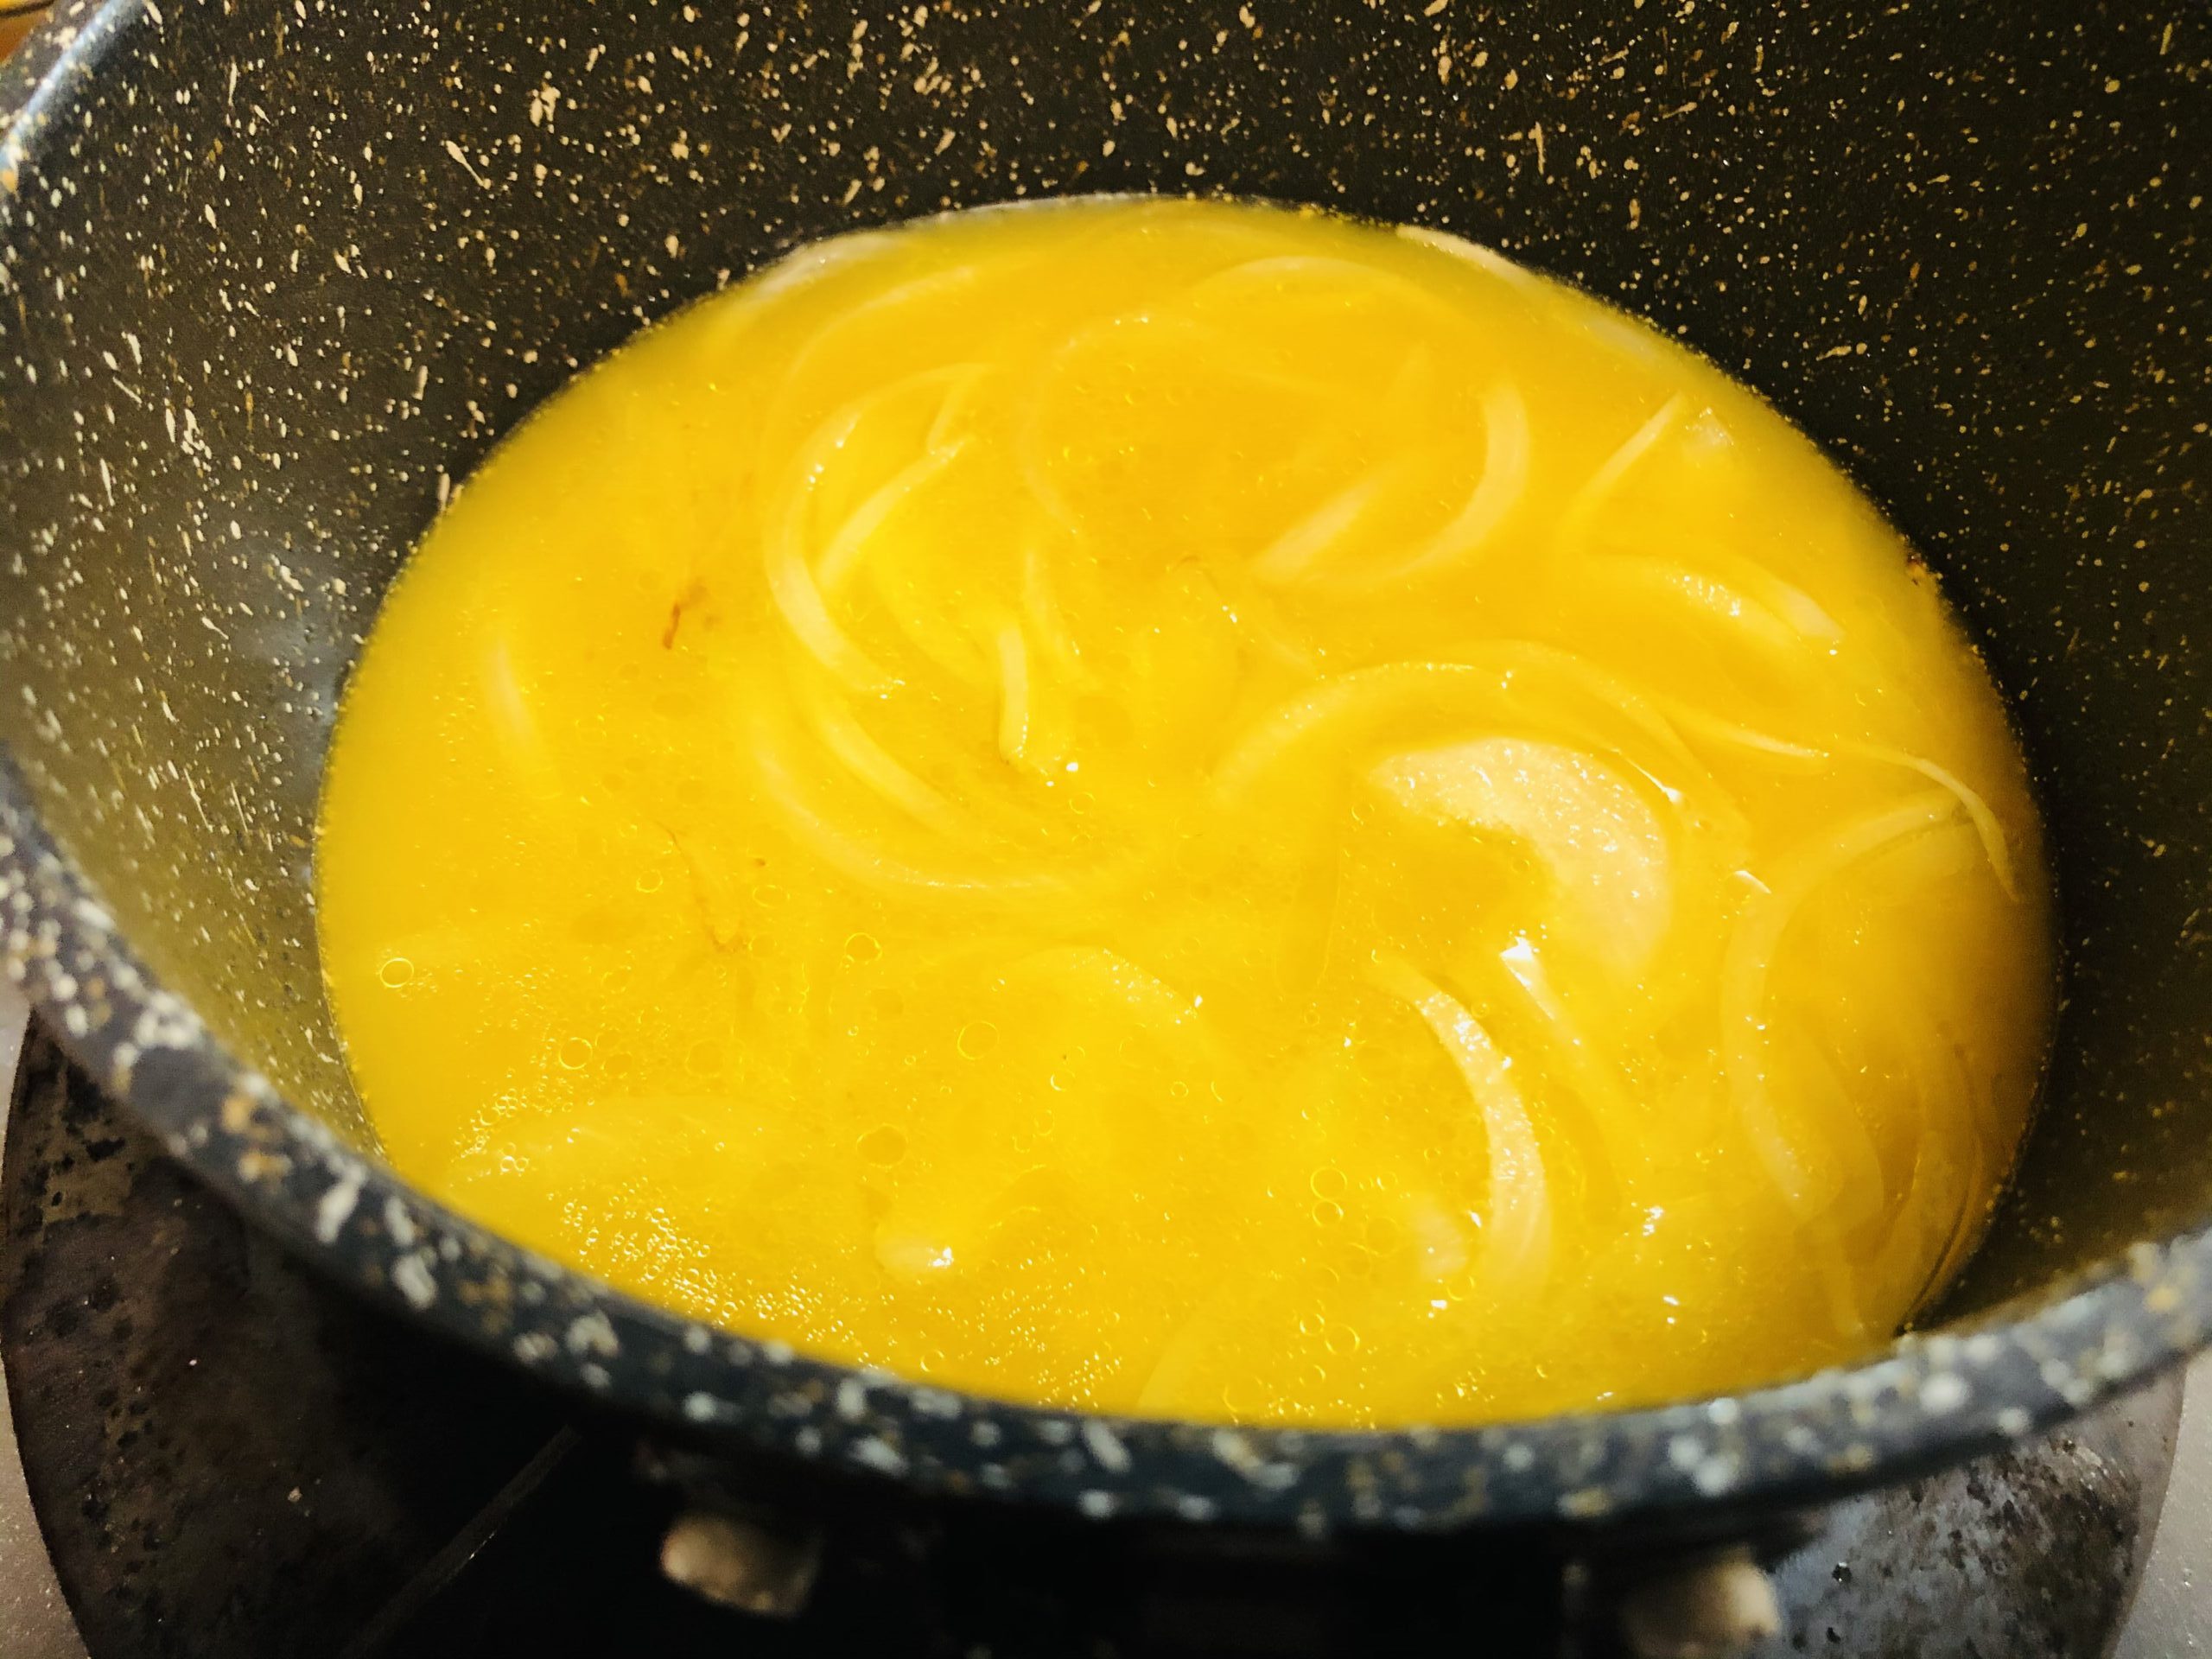 小鍋にオレンジジュースを入れた様子の画像です